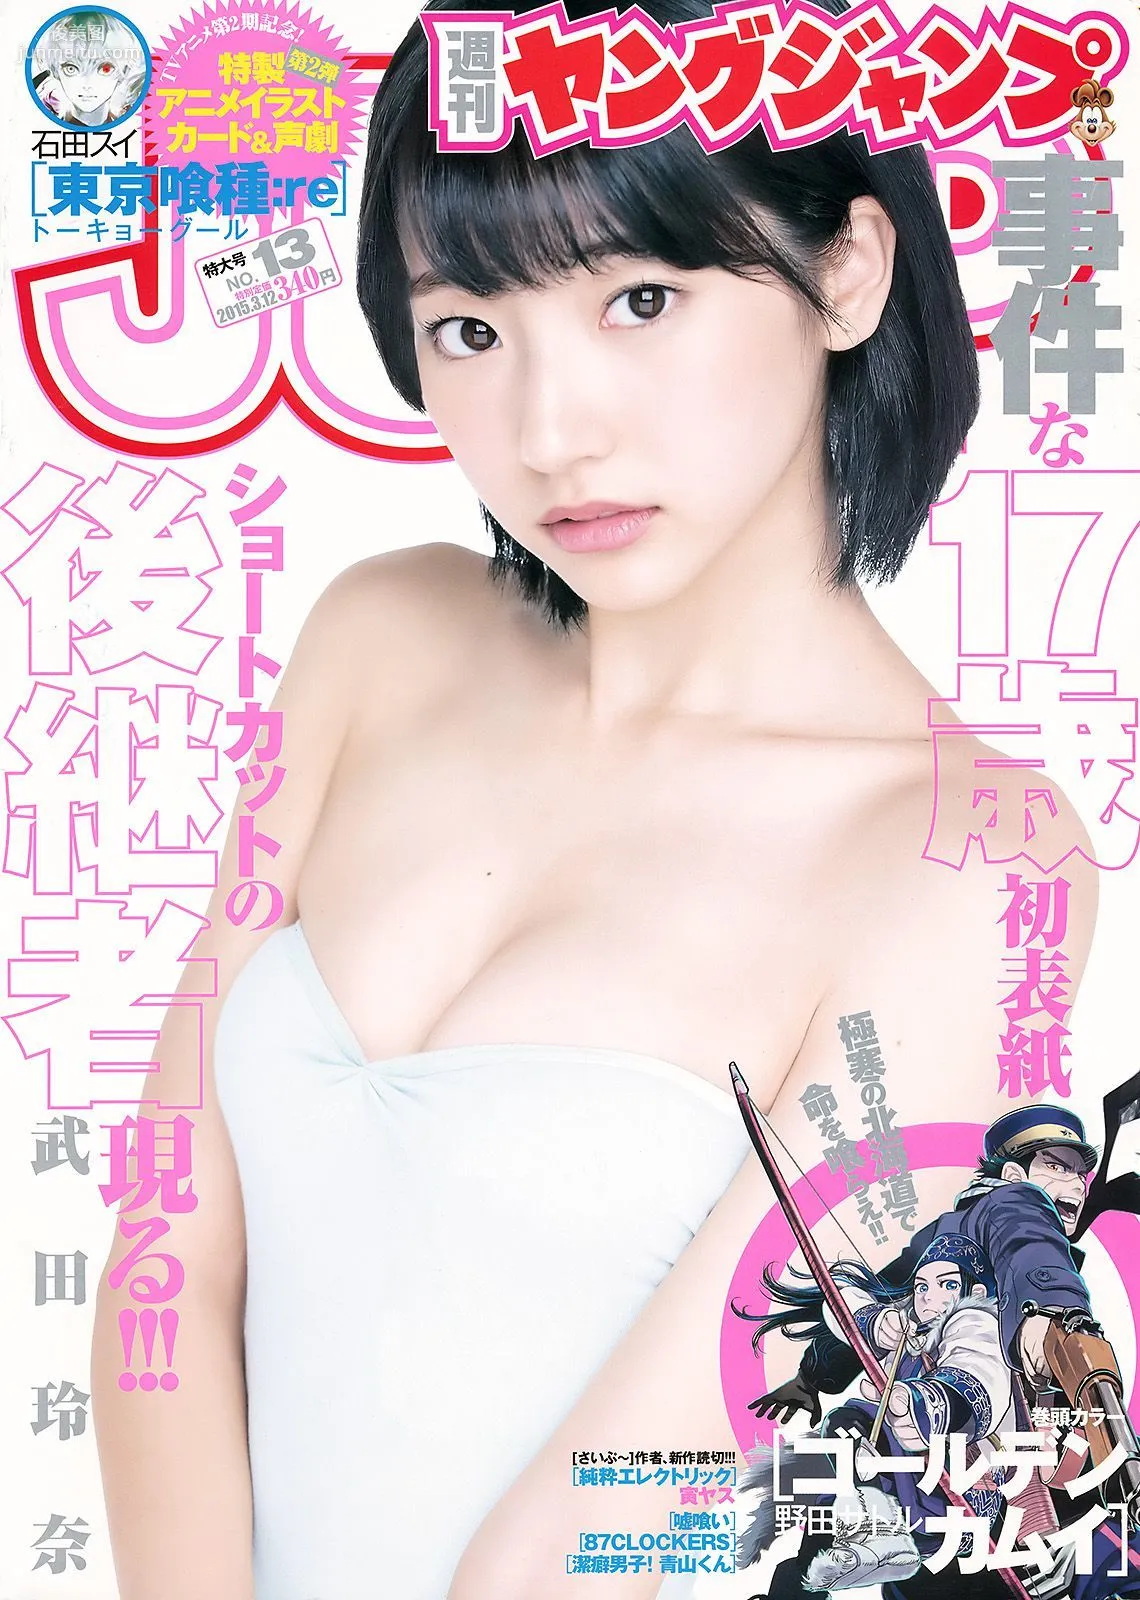 武田玲奈 山地まり [Weekly Young Jump] 2015年No.13 写真杂志1